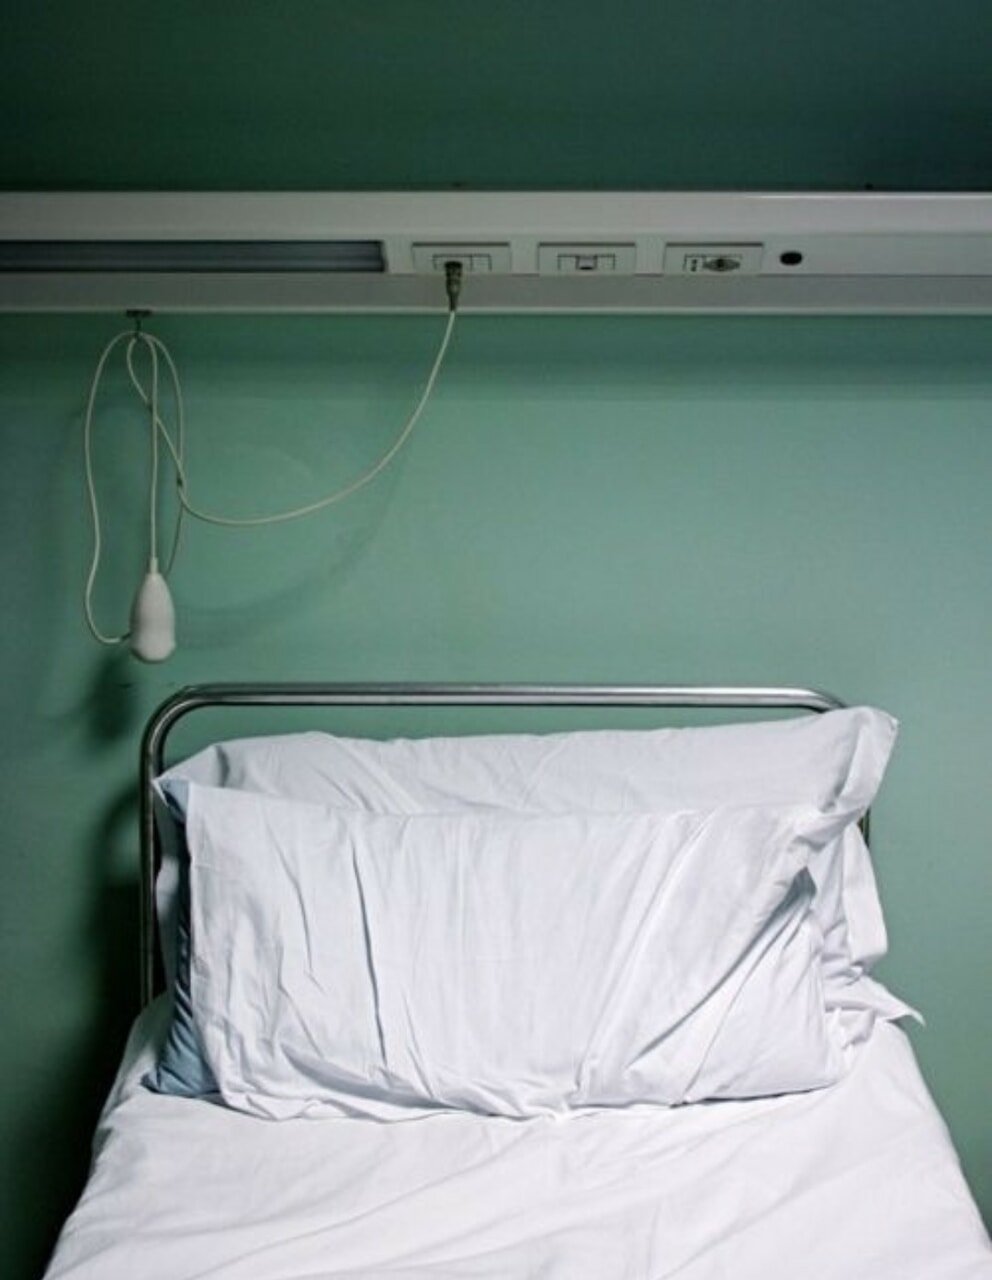 Кровать в больнице вид сверху